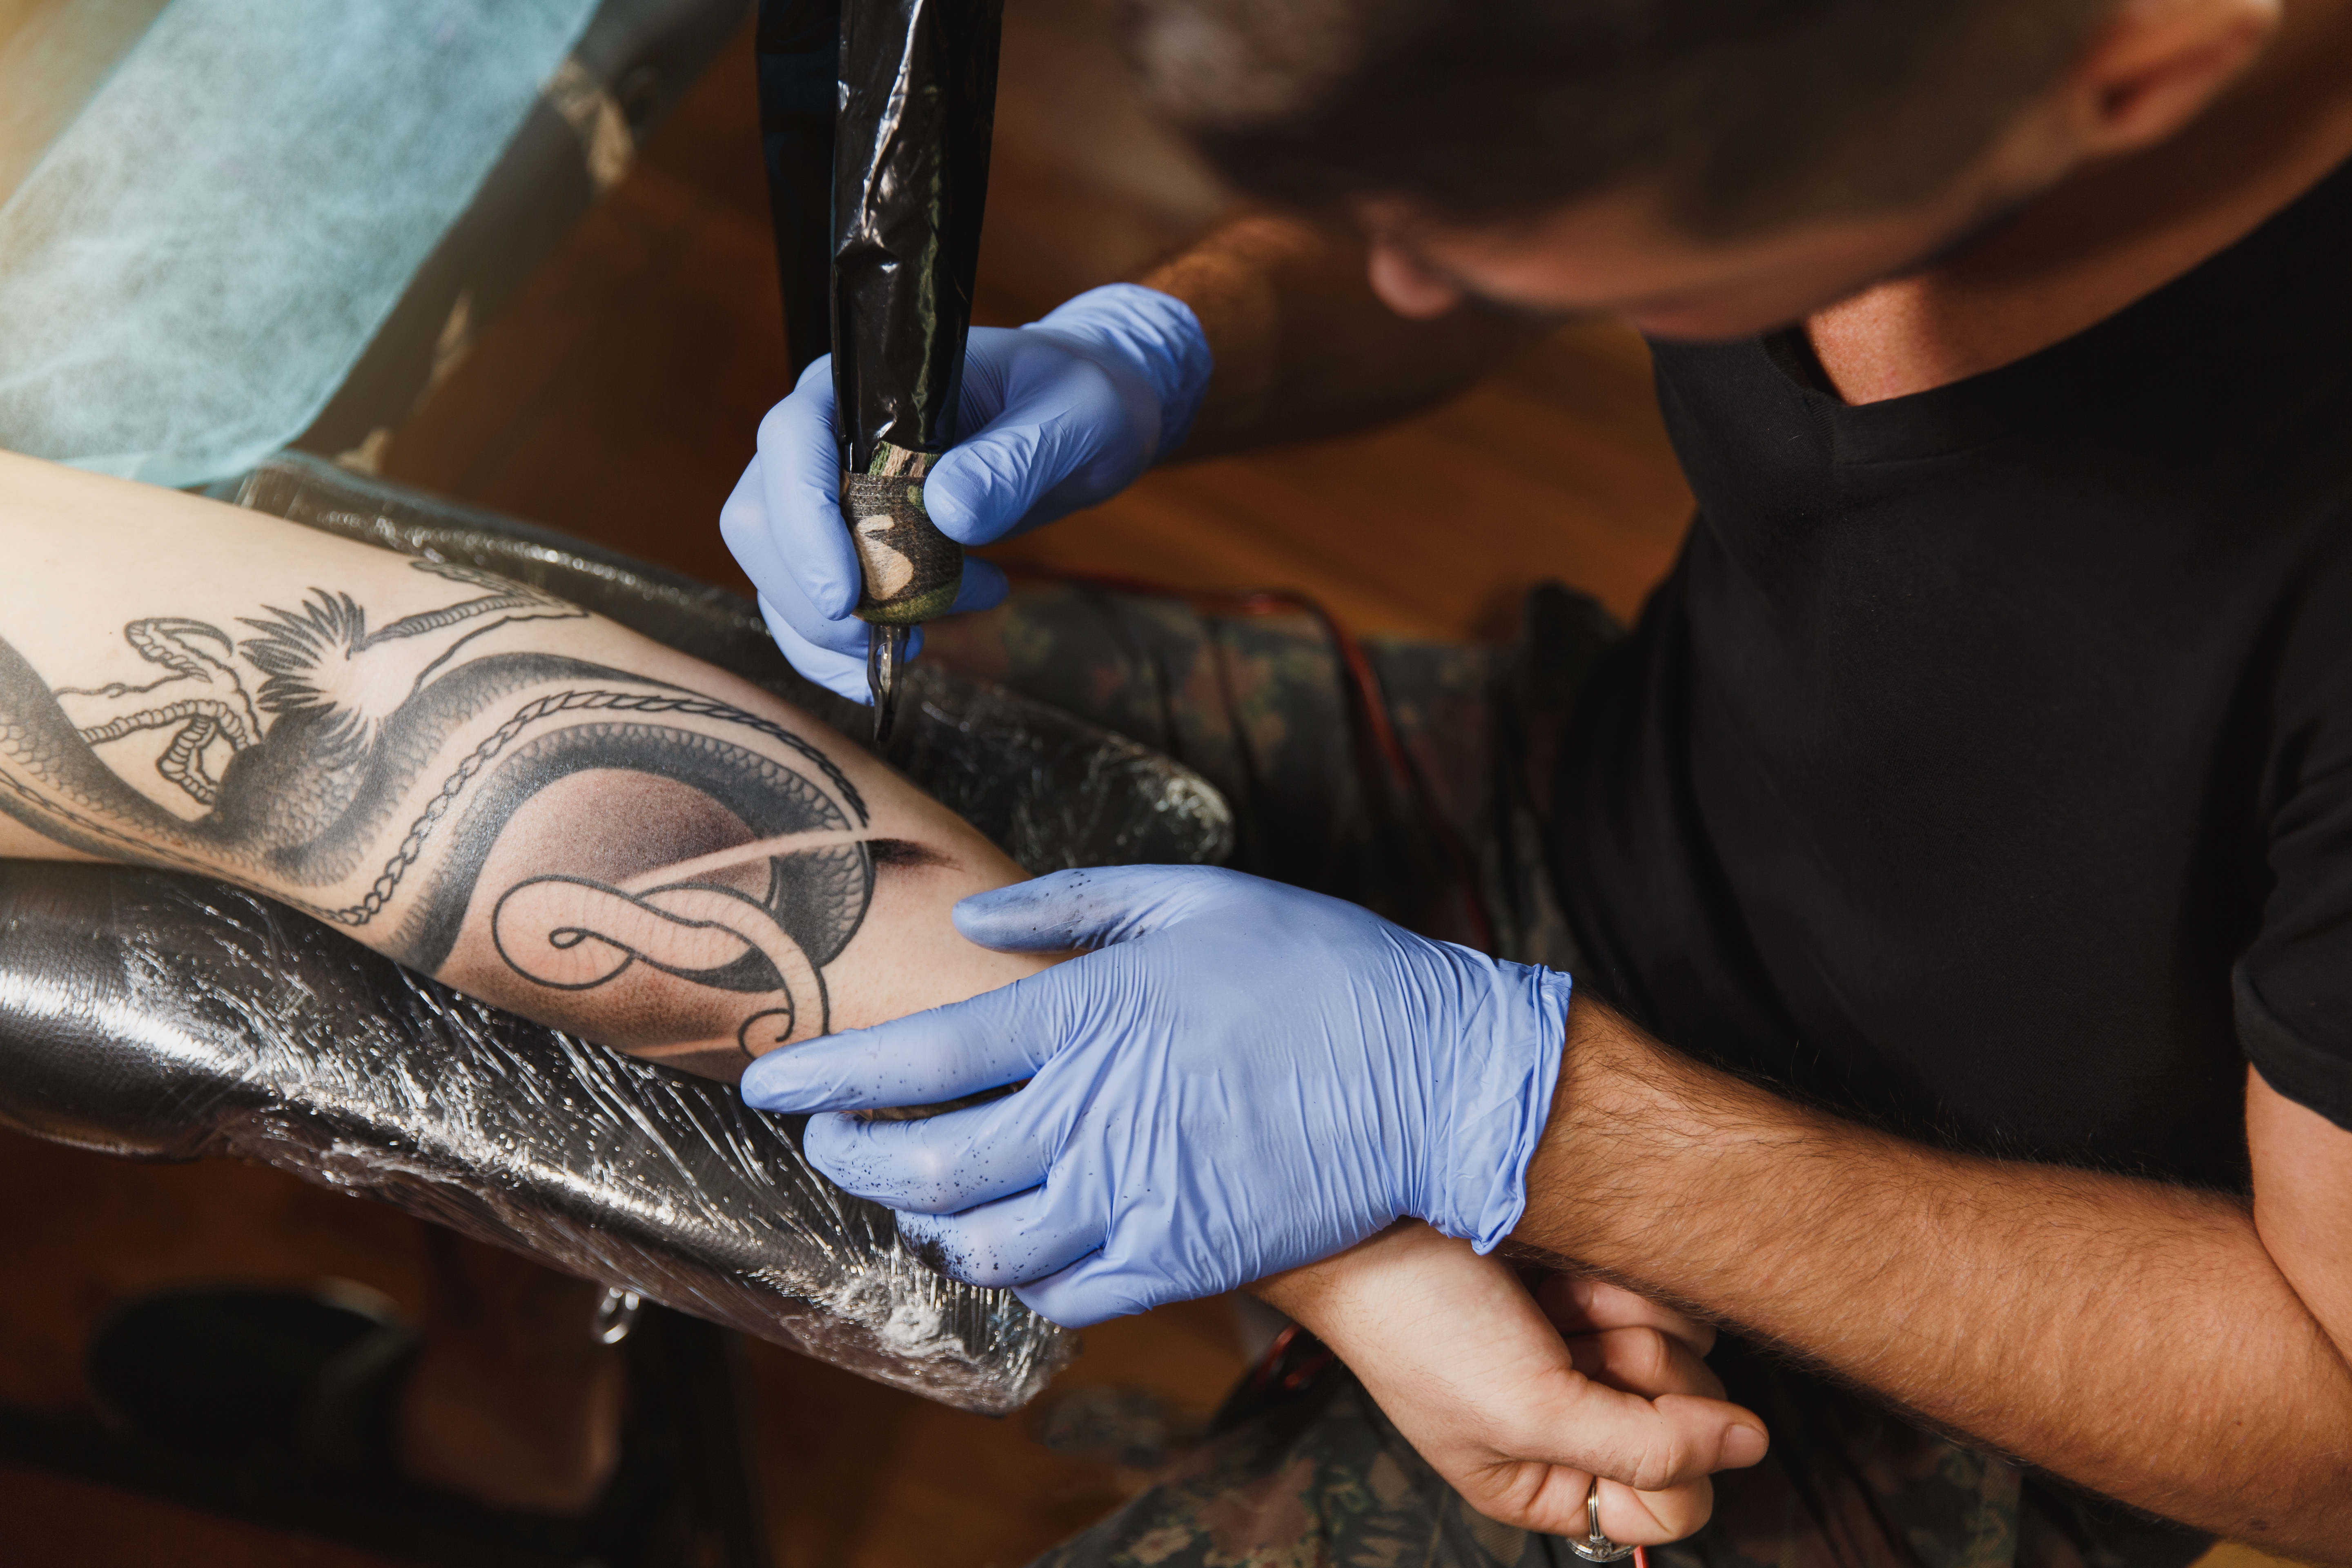 Inchiostri per tatuaggi e trucco permanente: nuove restrizioni in arrivo